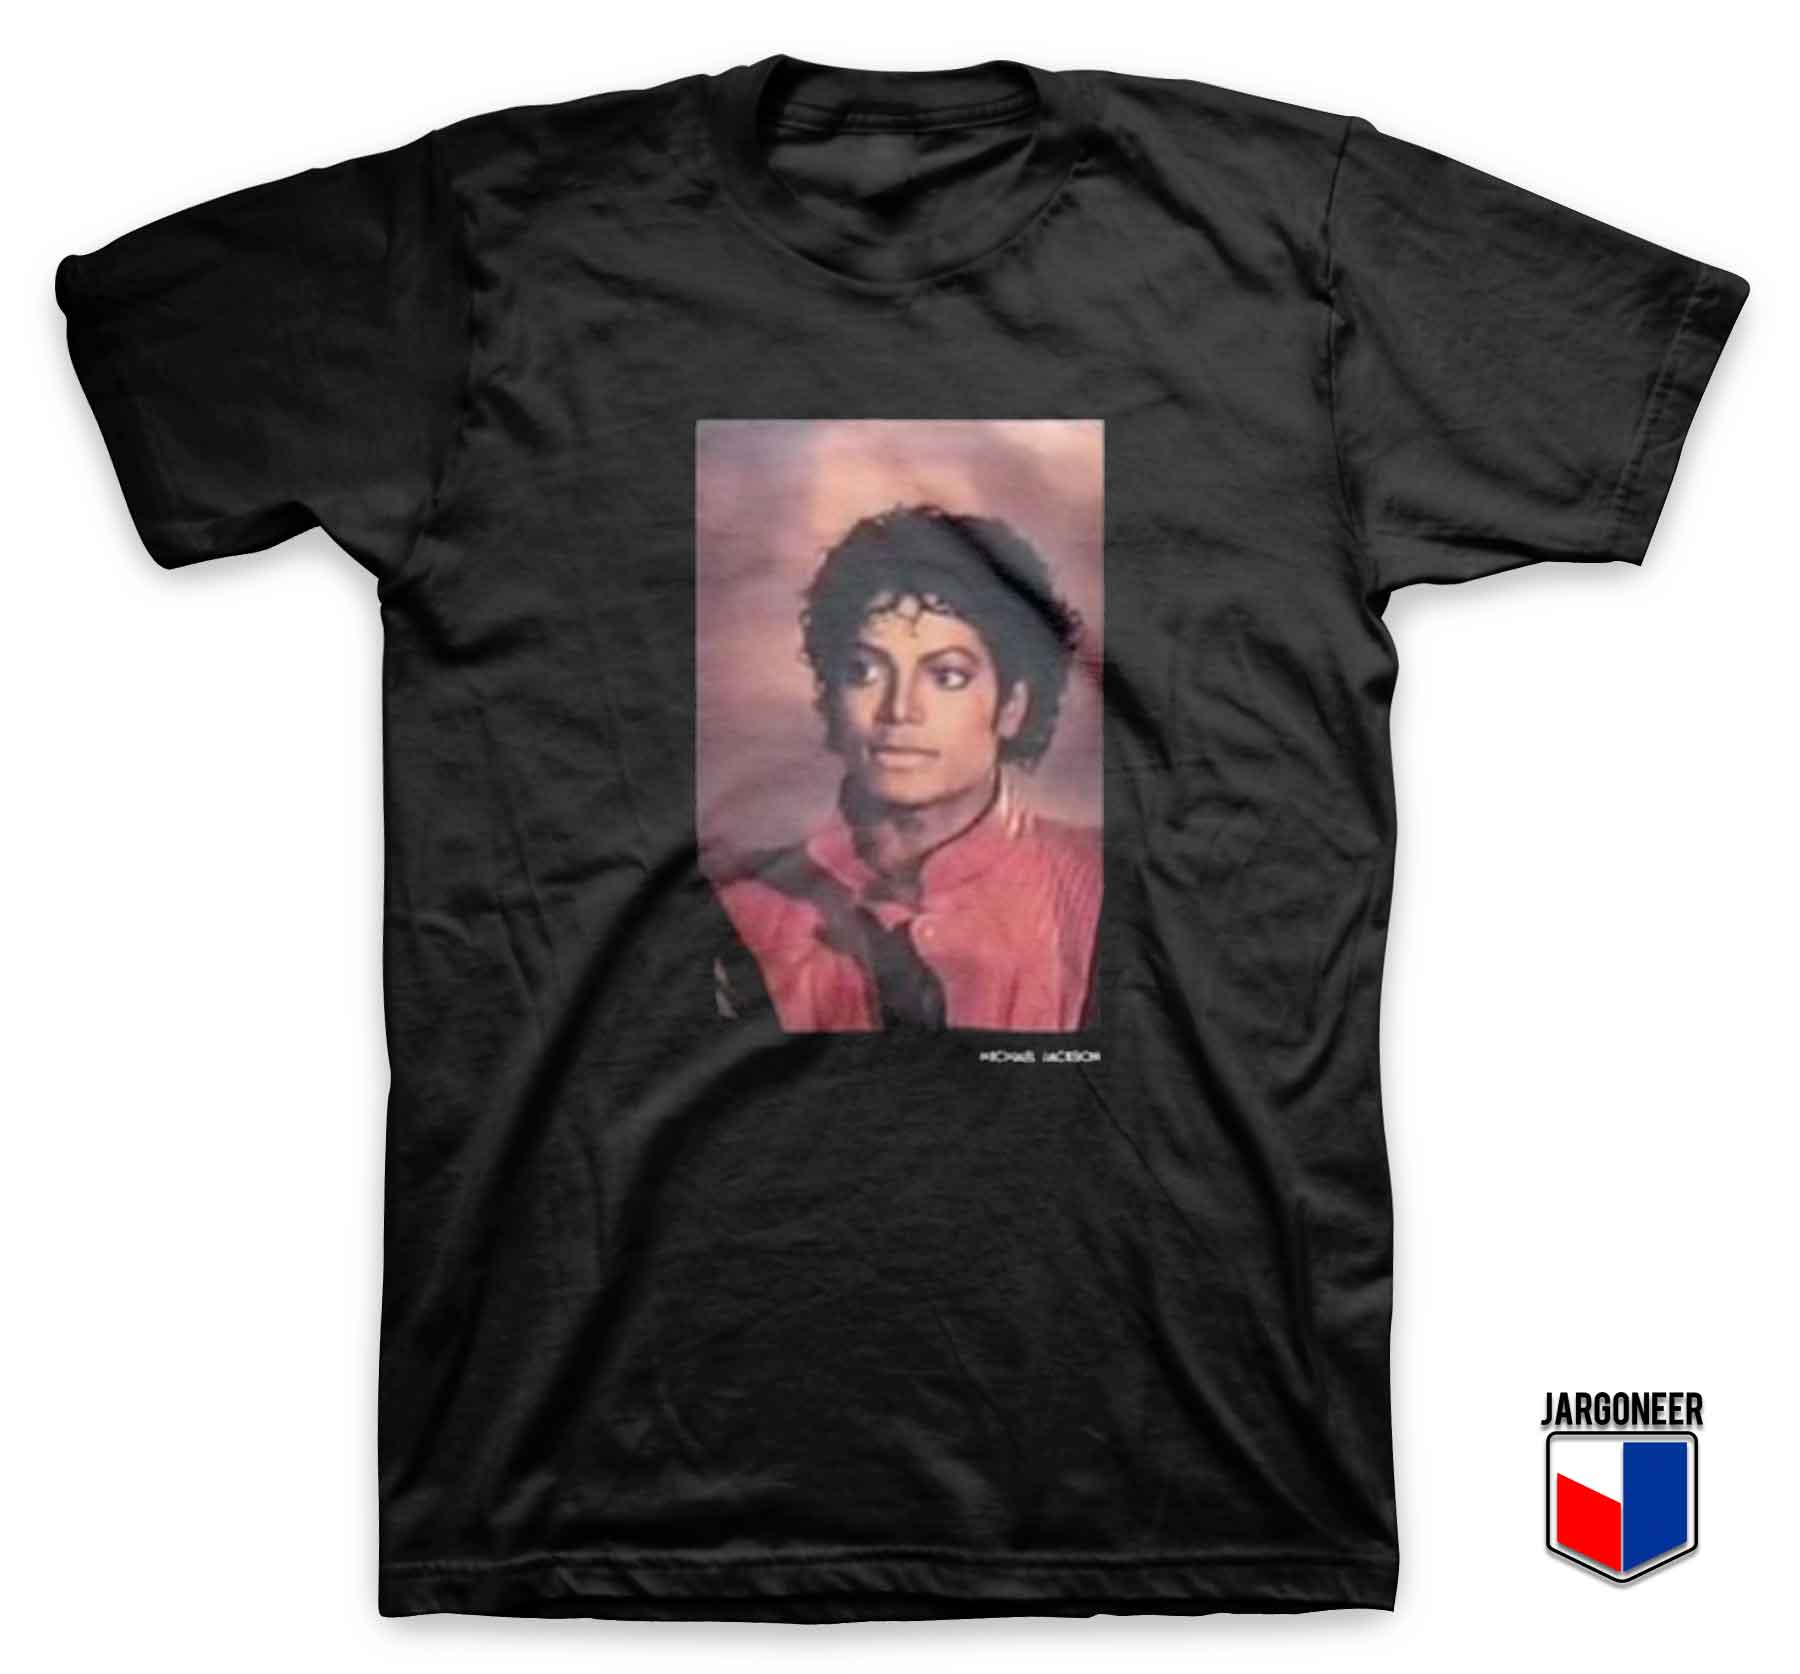 Michael Jackson Thriller Photo - Shop Unique Graphic Cool Shirt Designs